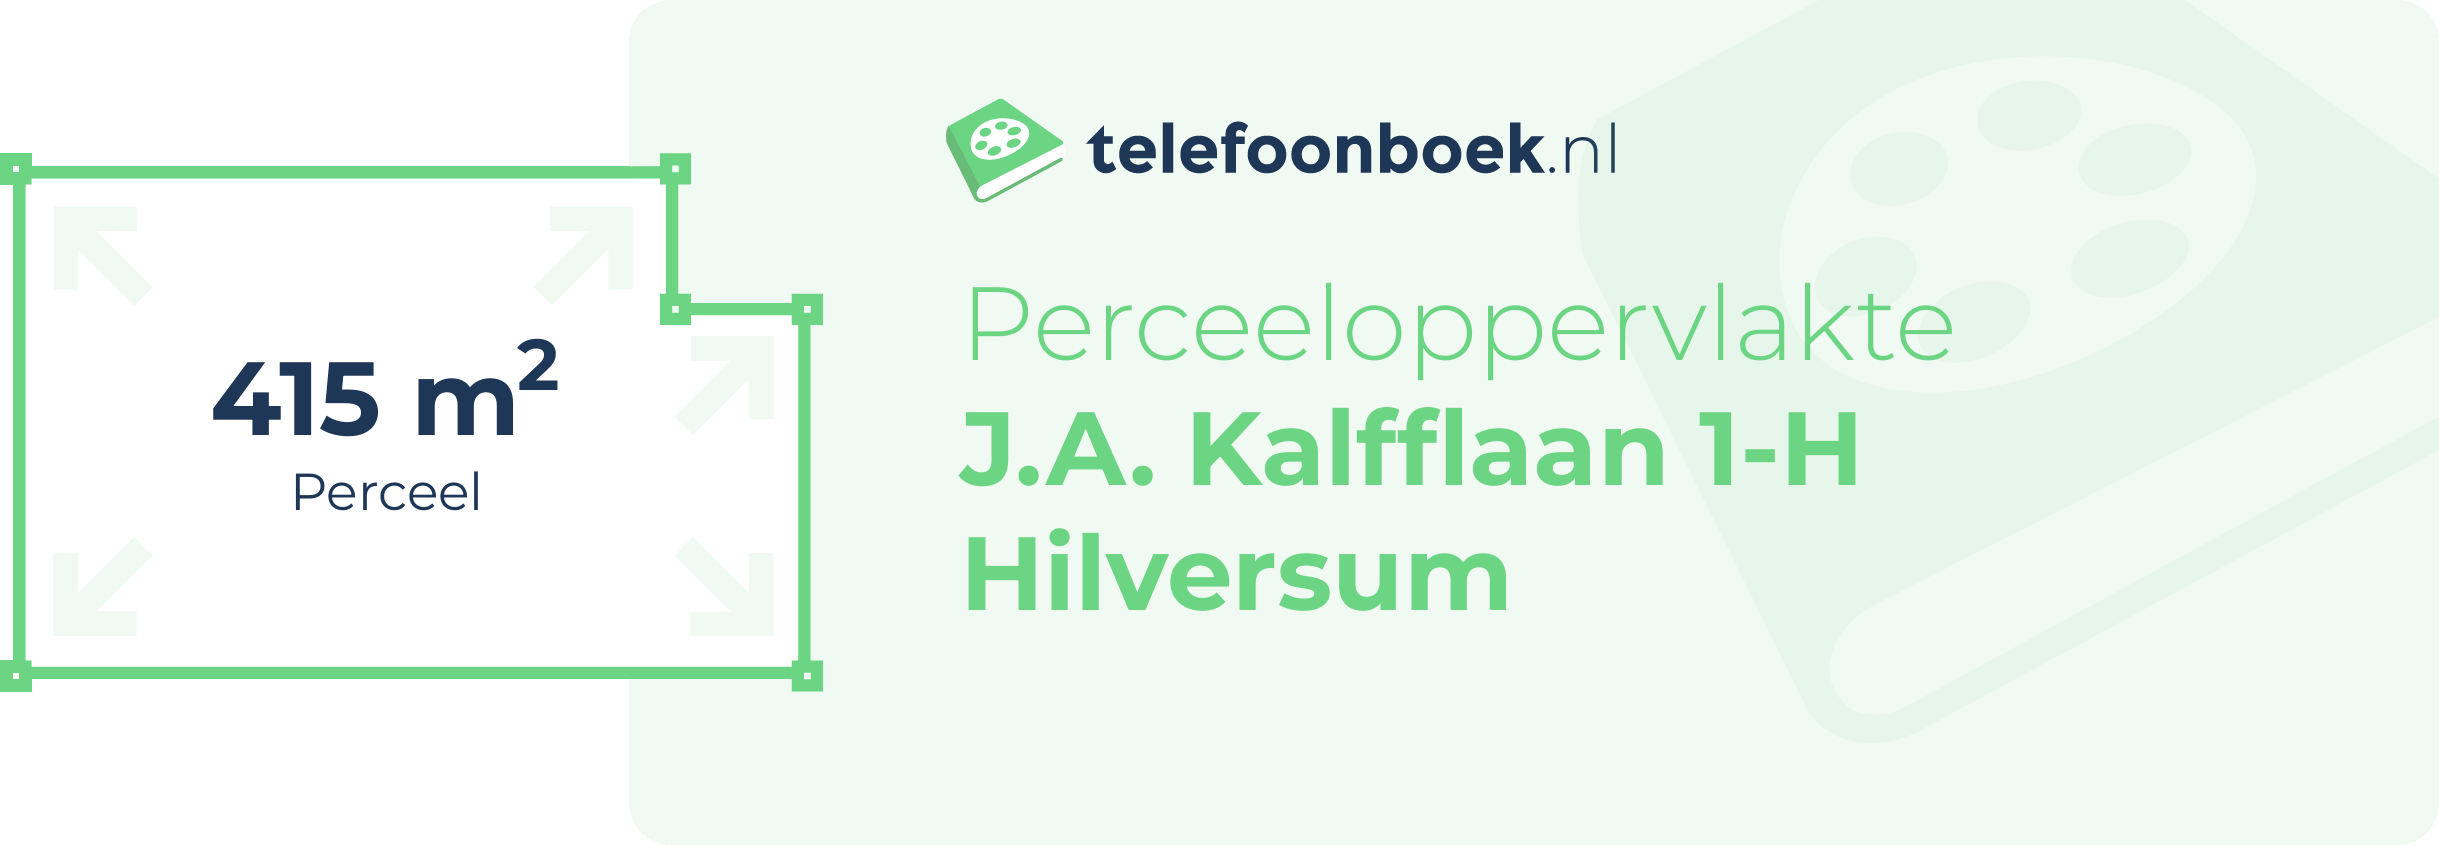 Perceeloppervlakte J.A. Kalfflaan 1-H Hilversum